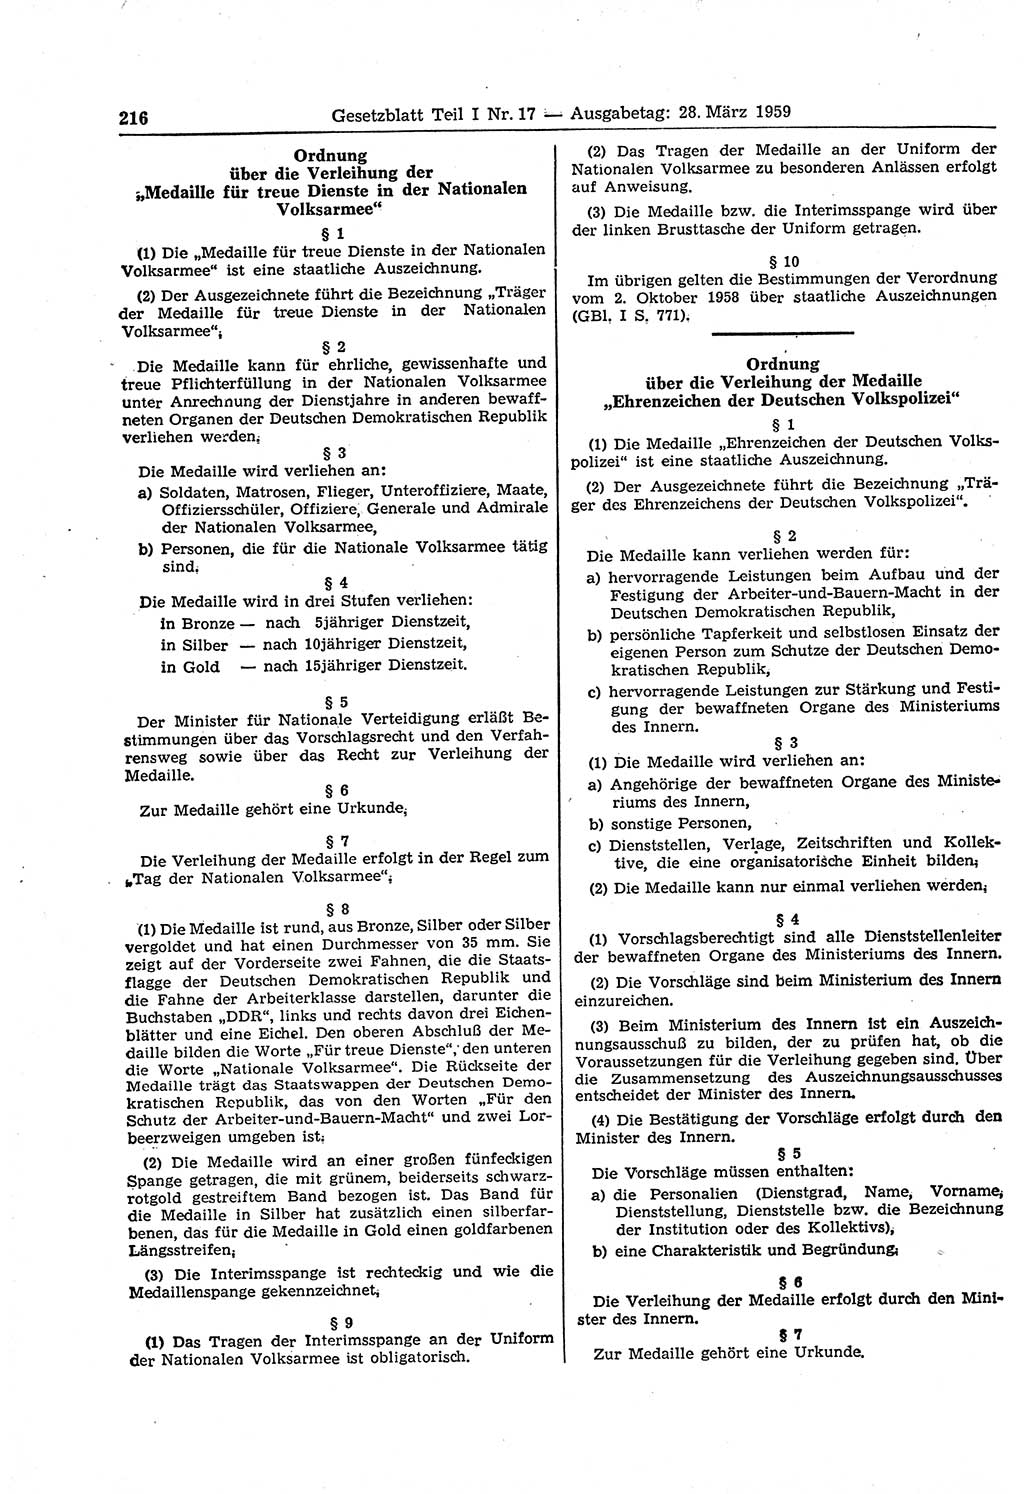 Gesetzblatt (GBl.) der Deutschen Demokratischen Republik (DDR) Teil Ⅰ 1959, Seite 216 (GBl. DDR Ⅰ 1959, S. 216)